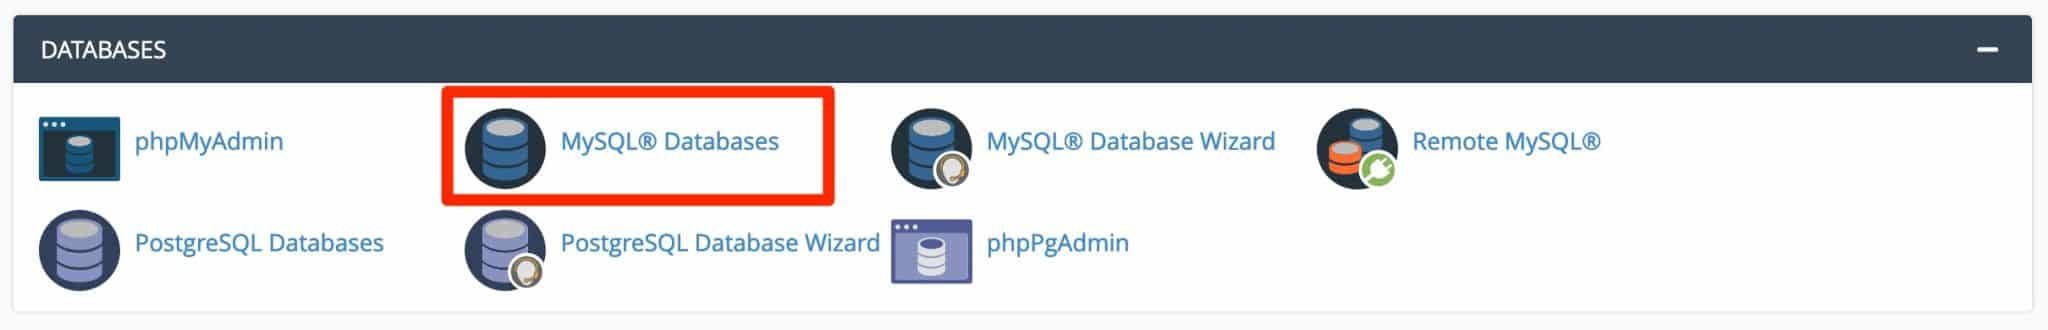 cPanel MySQL Databases.